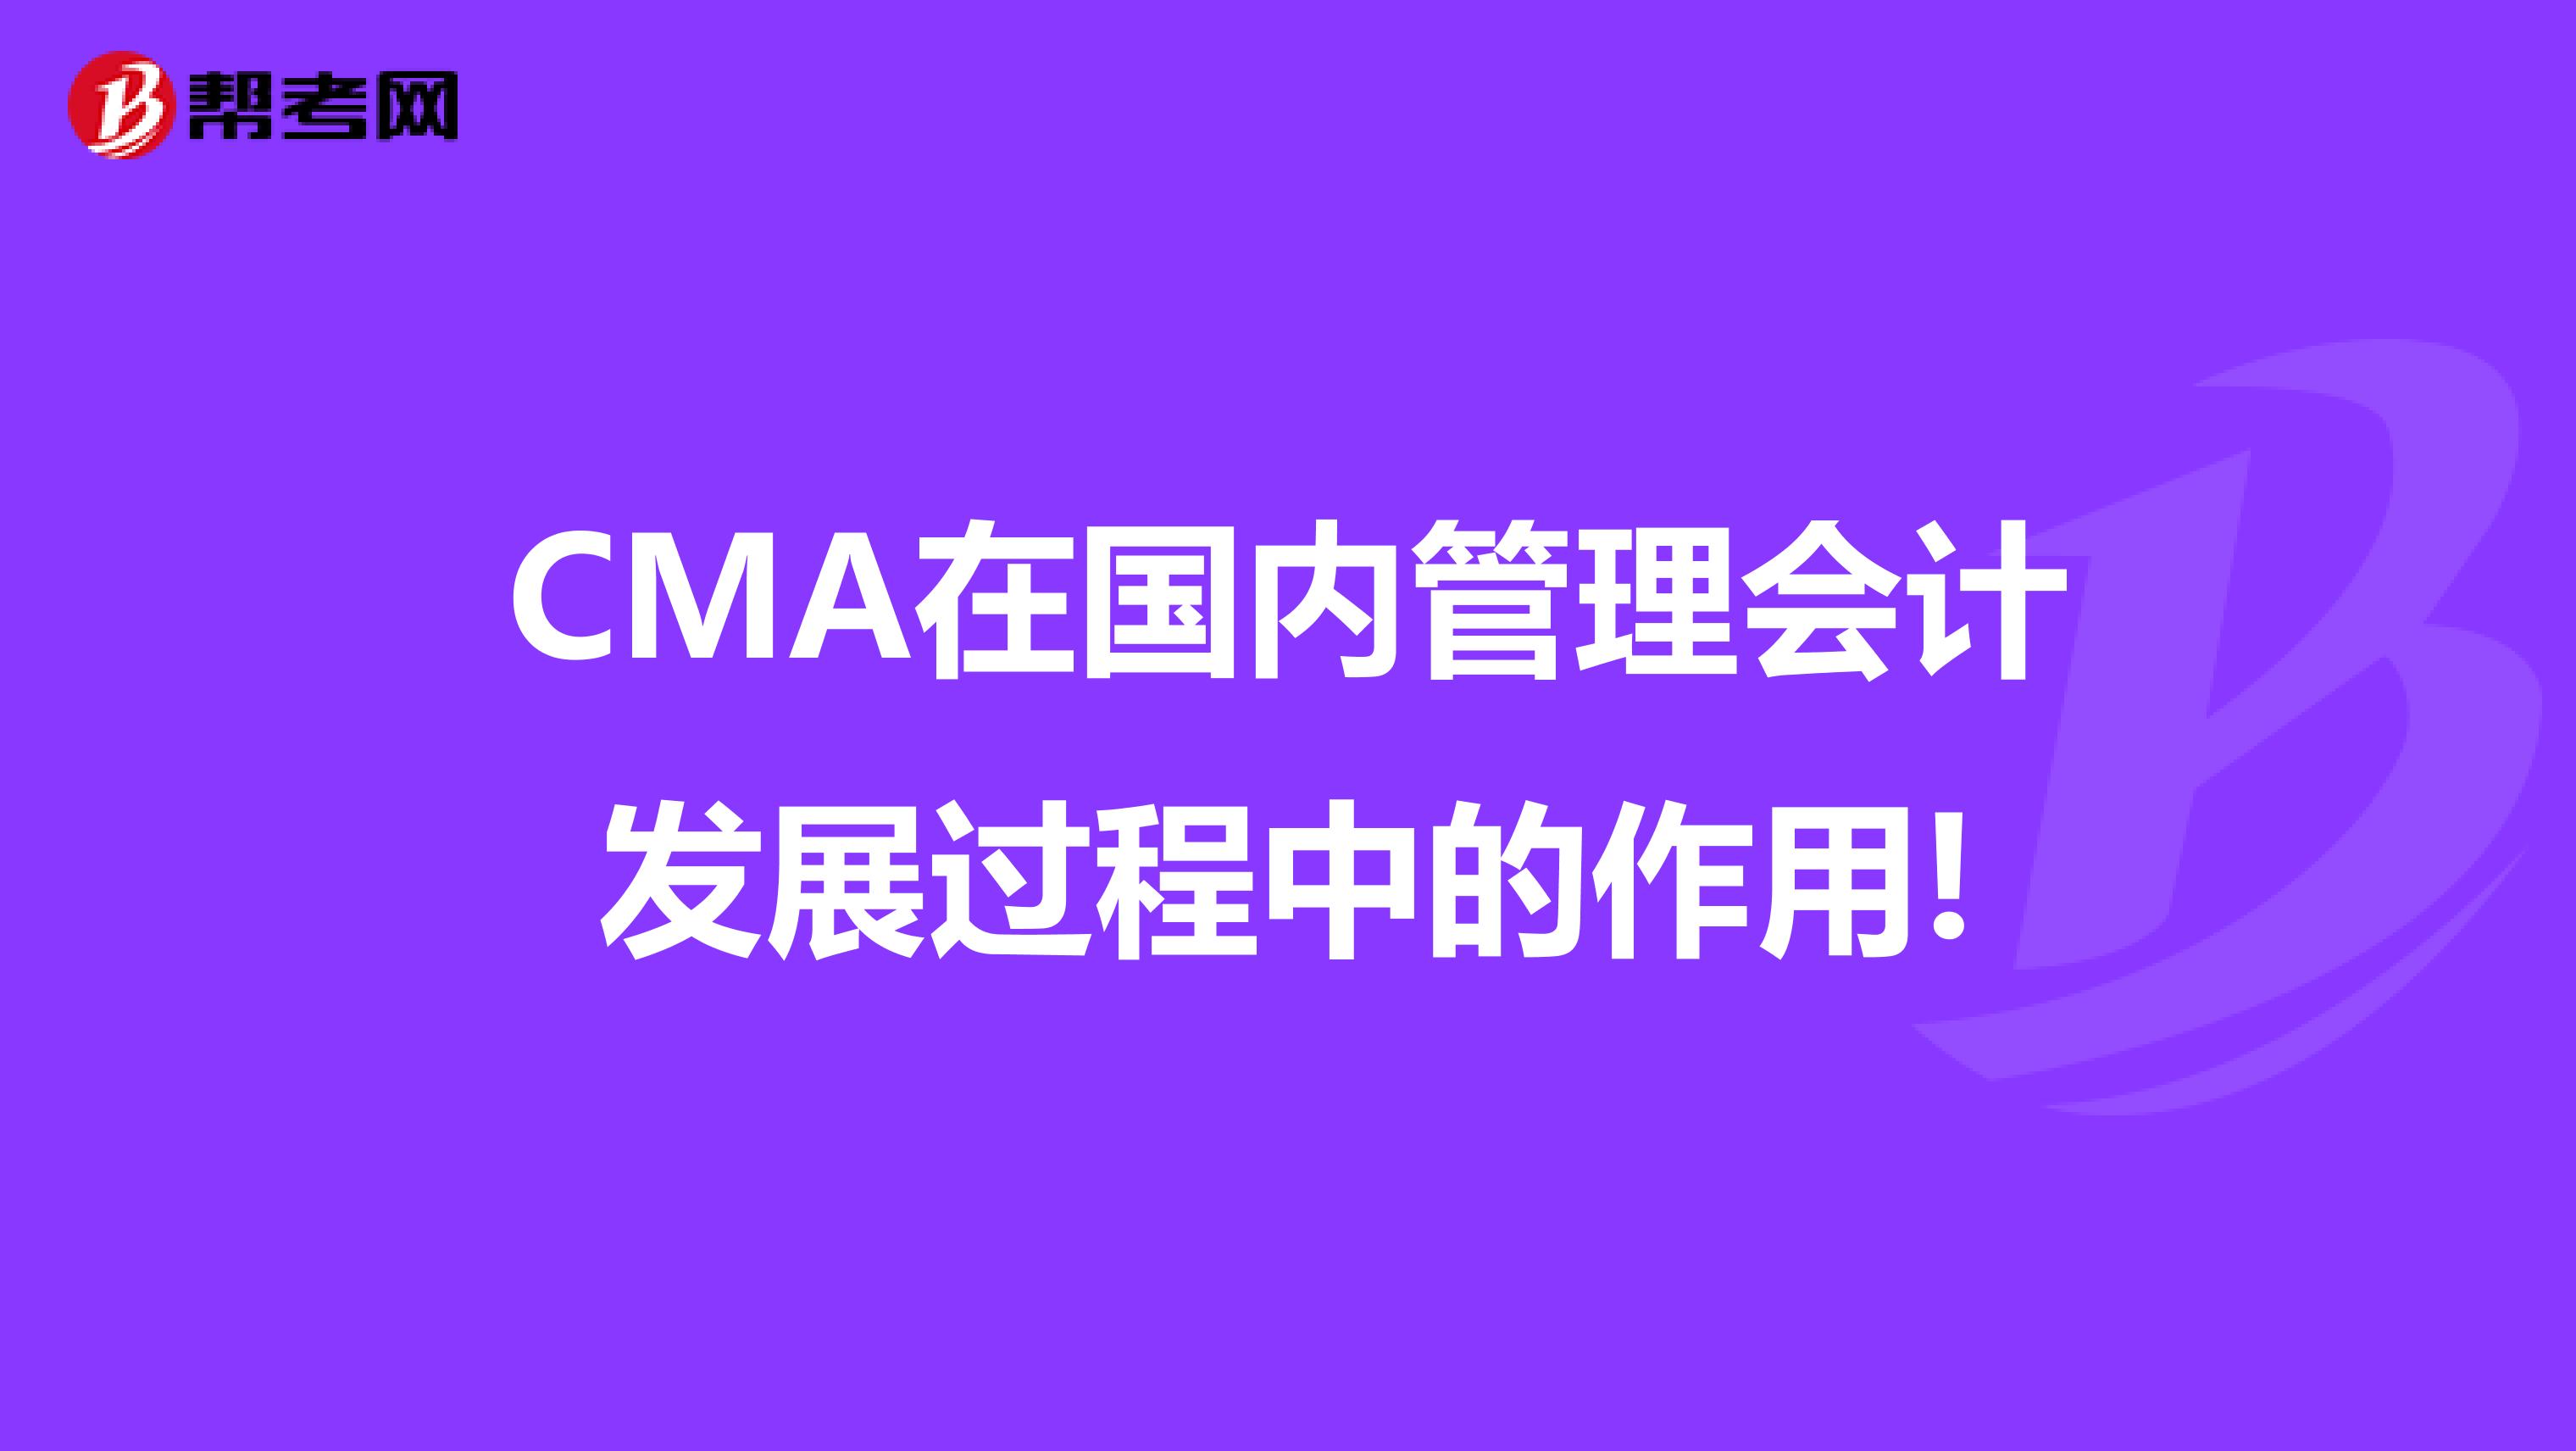 CMA在国内管理会计发展过程中的作用!